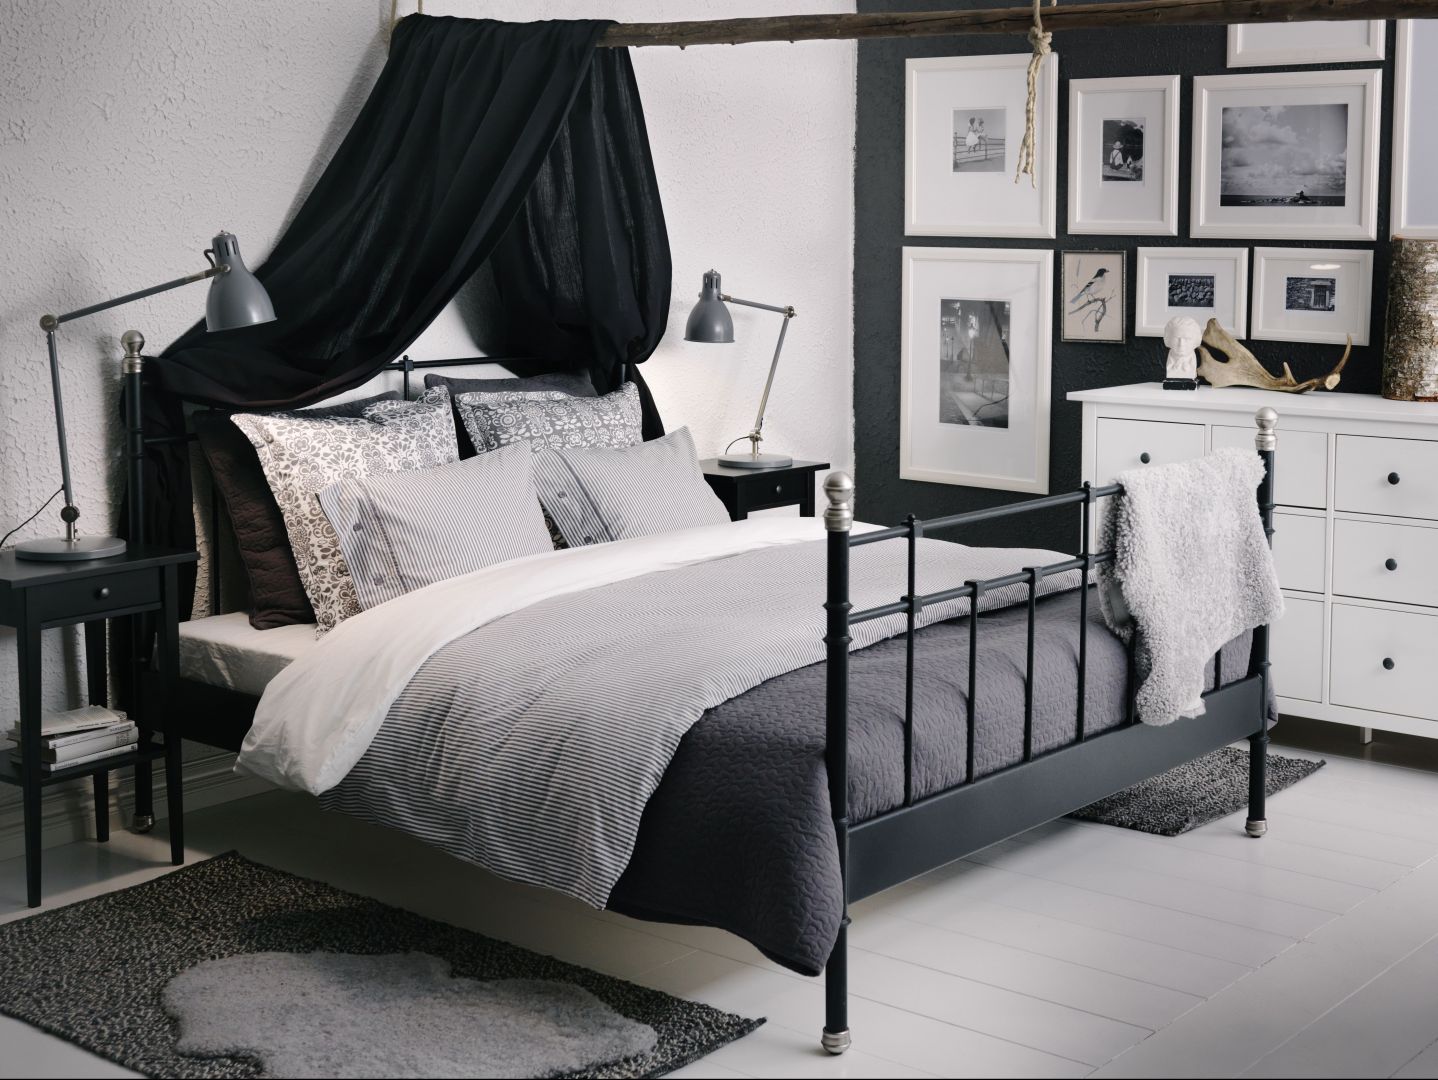 Łóżko Svelvik marki IKEA wykonane ze stali, barwionej szpachli epoksydowo/poliestrowa w proszku, podstawa łóżka z drewnianych listew
Fot. IKEA
